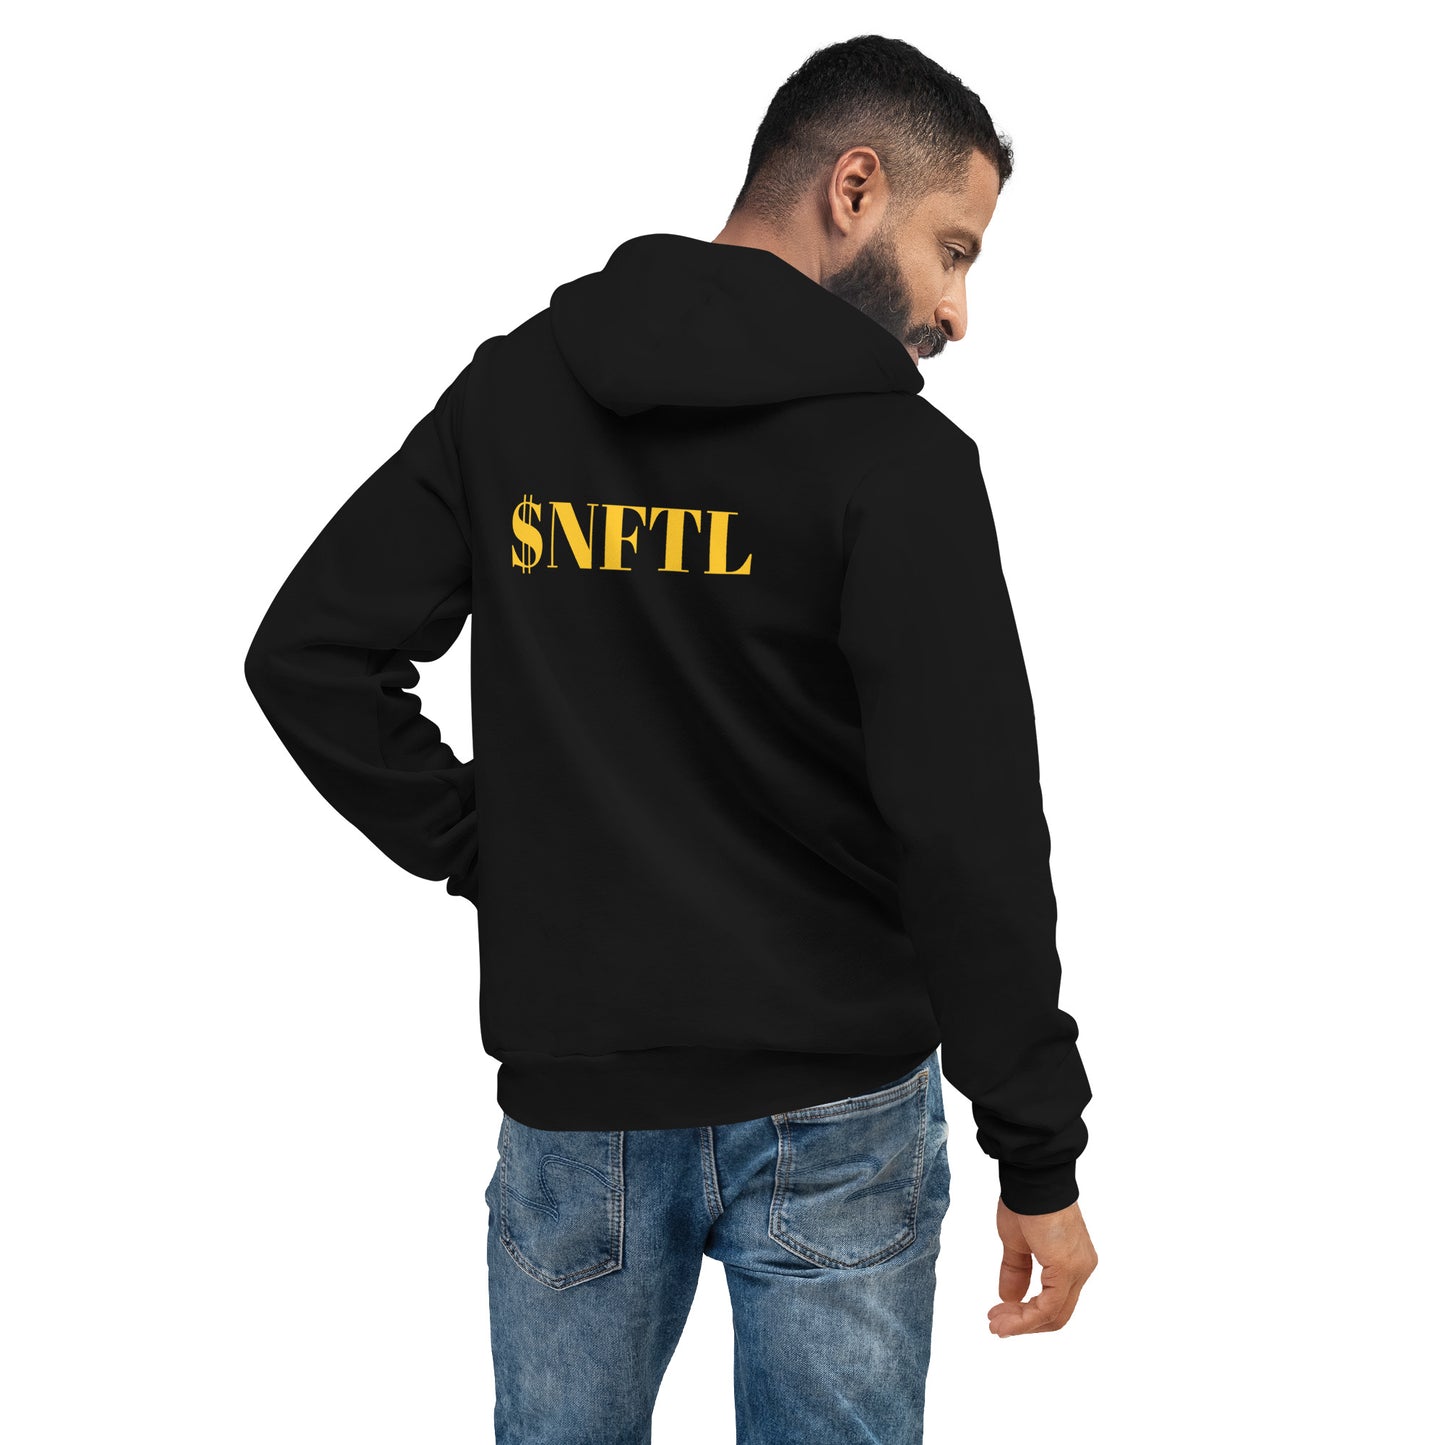 Unisex $NFTL hoodie